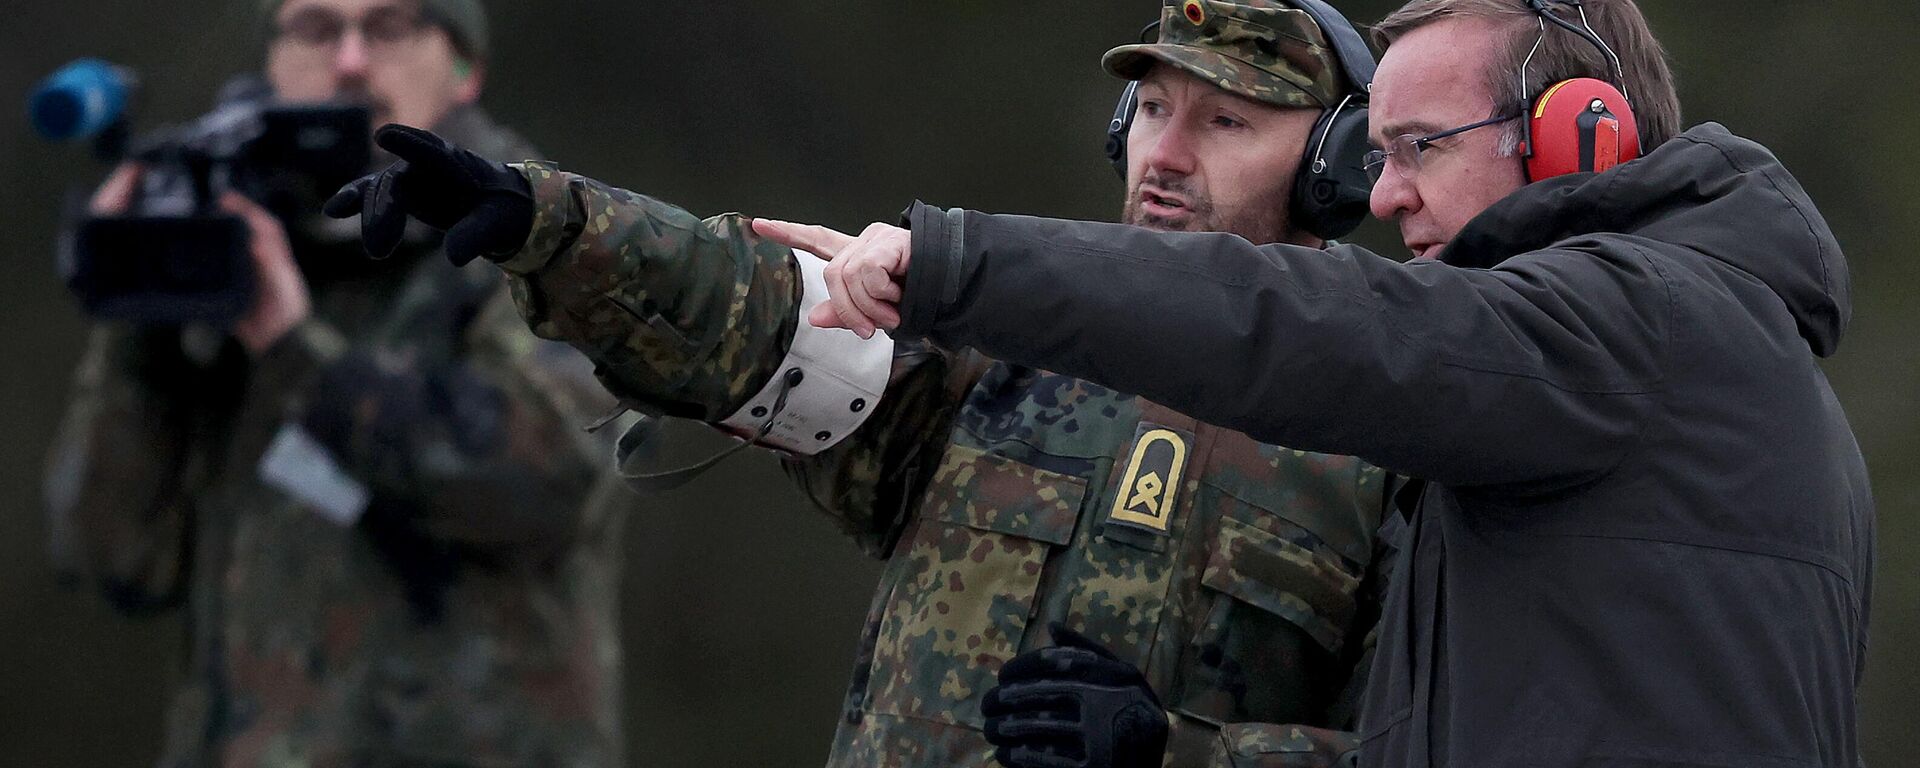 O ministro da Defesa alemão, Boris Pistorius (à direita), observa um treinamento com armas de fogo durante sua visita às tropas das forças armadas alemãs Bundeswehr em uma área de treinamento militar em Altengrabow, perto de Moeckern, leste da Alemanha, em 26 de janeiro de 2023. - Sputnik Brasil, 1920, 26.01.2023